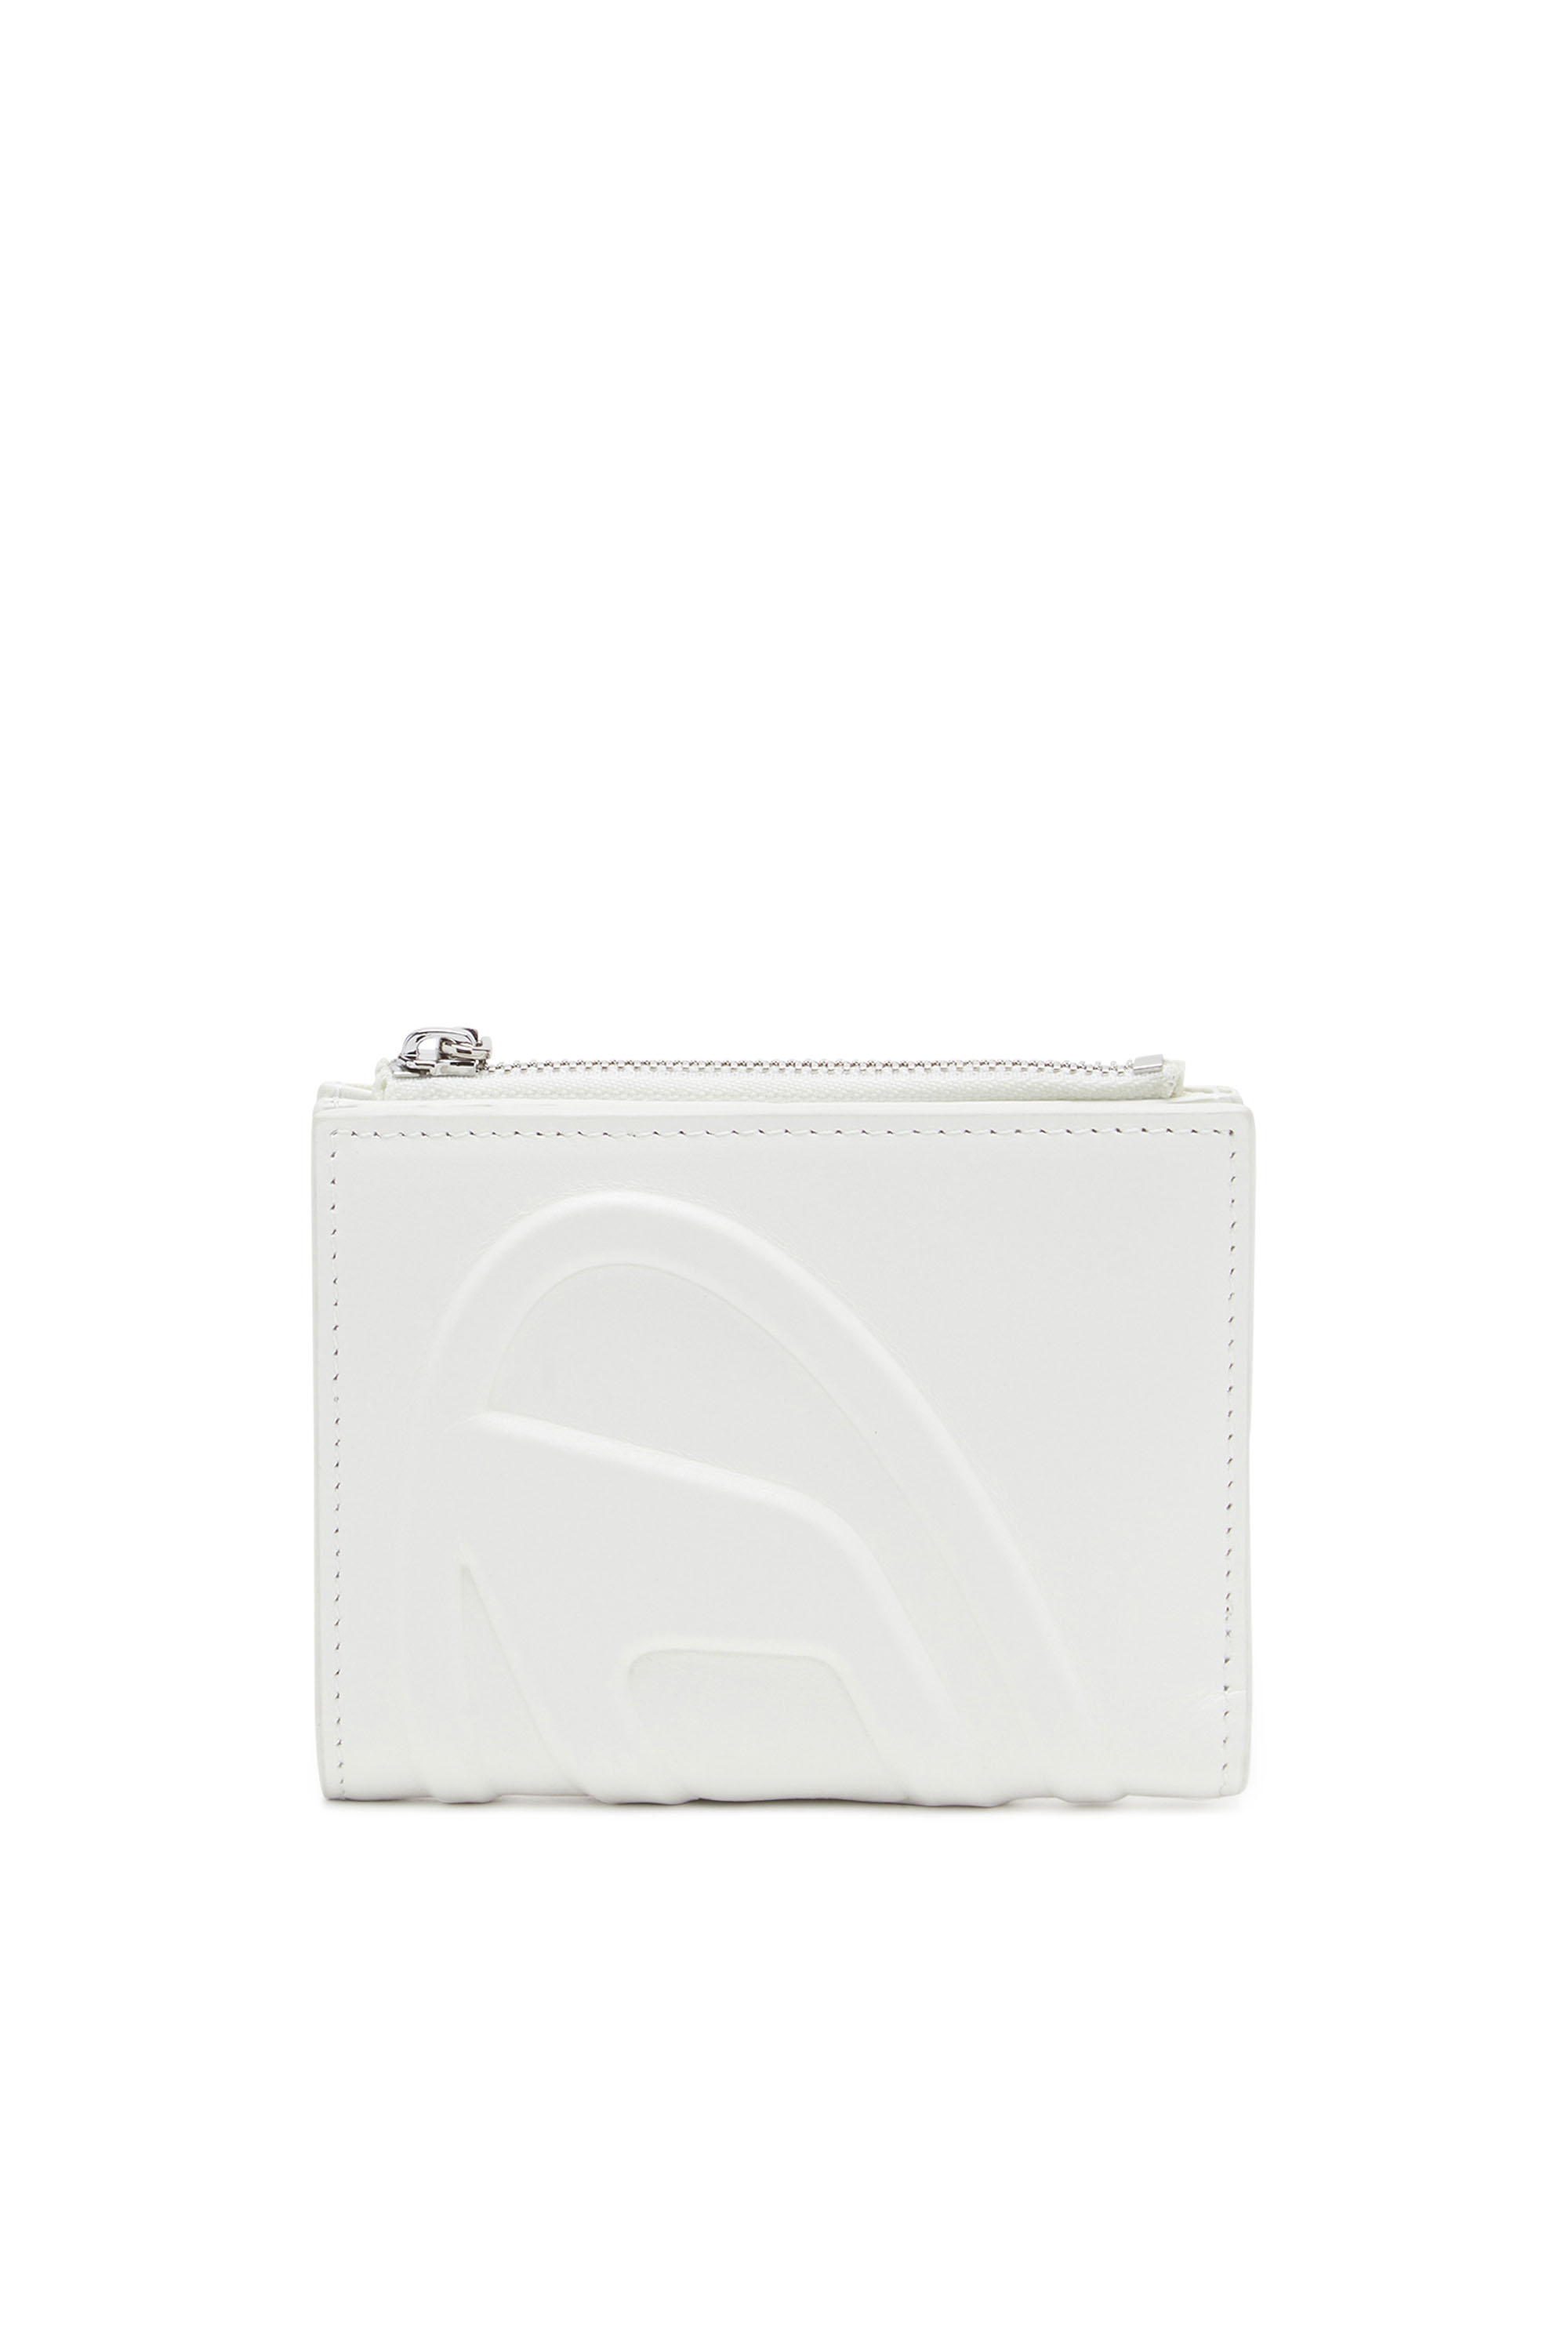 Diesel - Petit portefeuille en cuir avec logo embossé - Petits Portefeuilles - Femme - Blanc